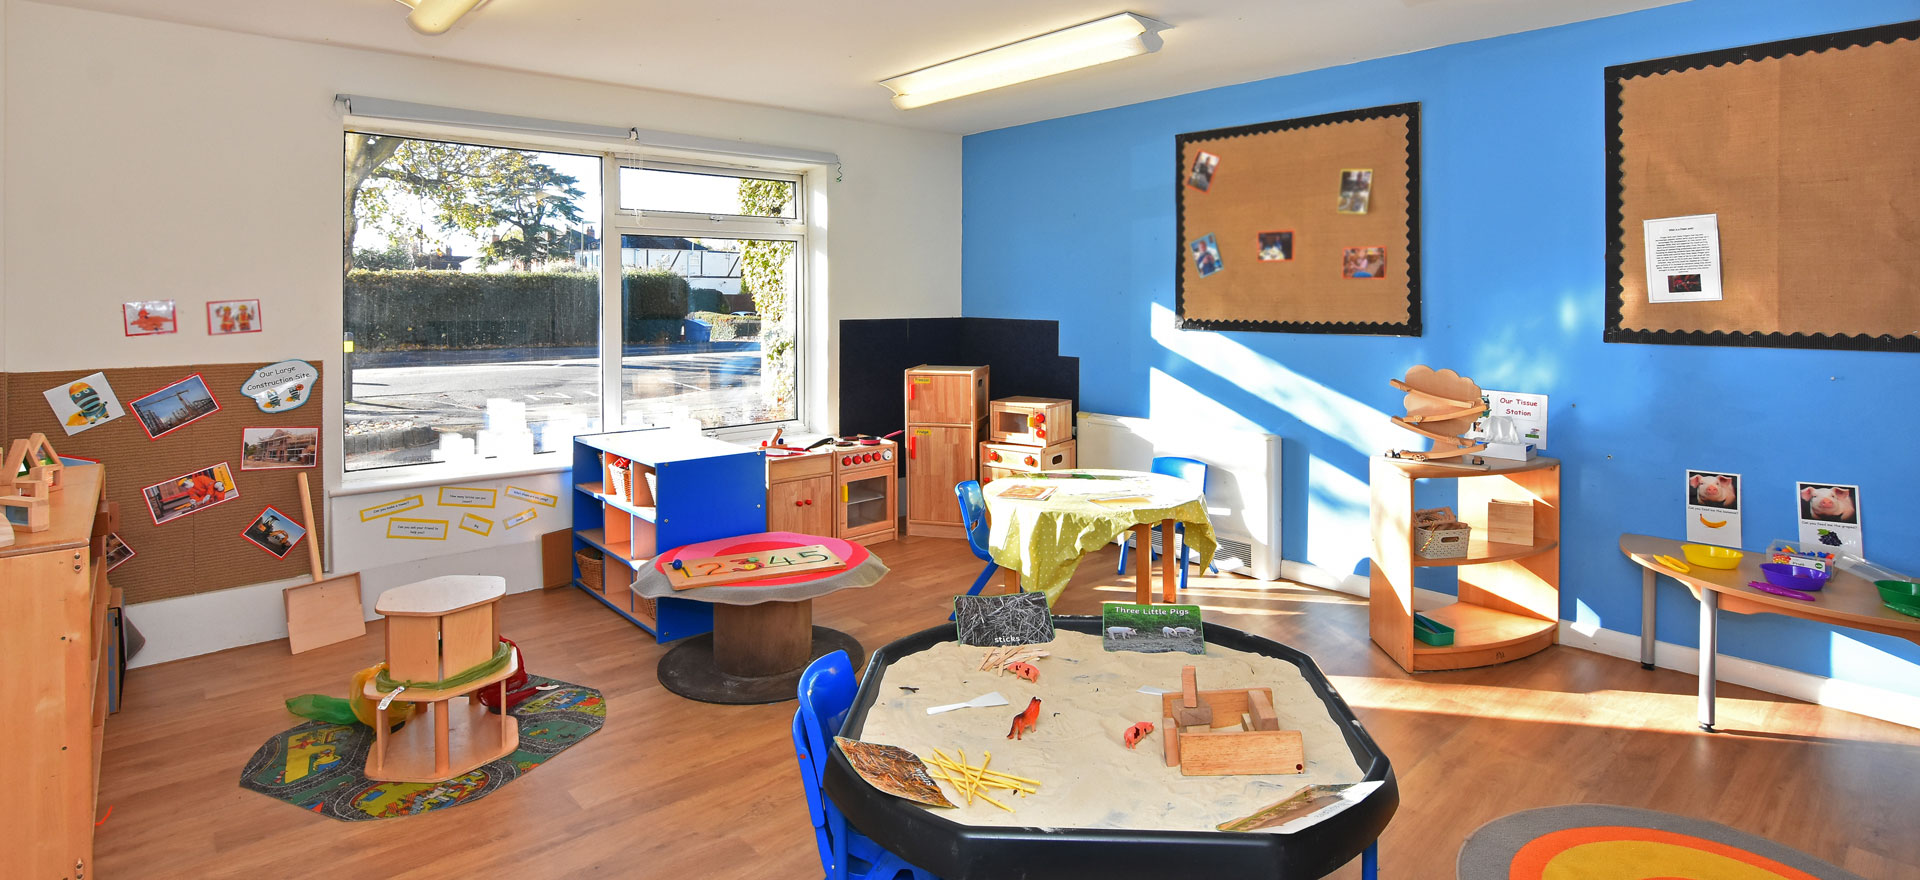 Farnborough Day Nursery and Preschool